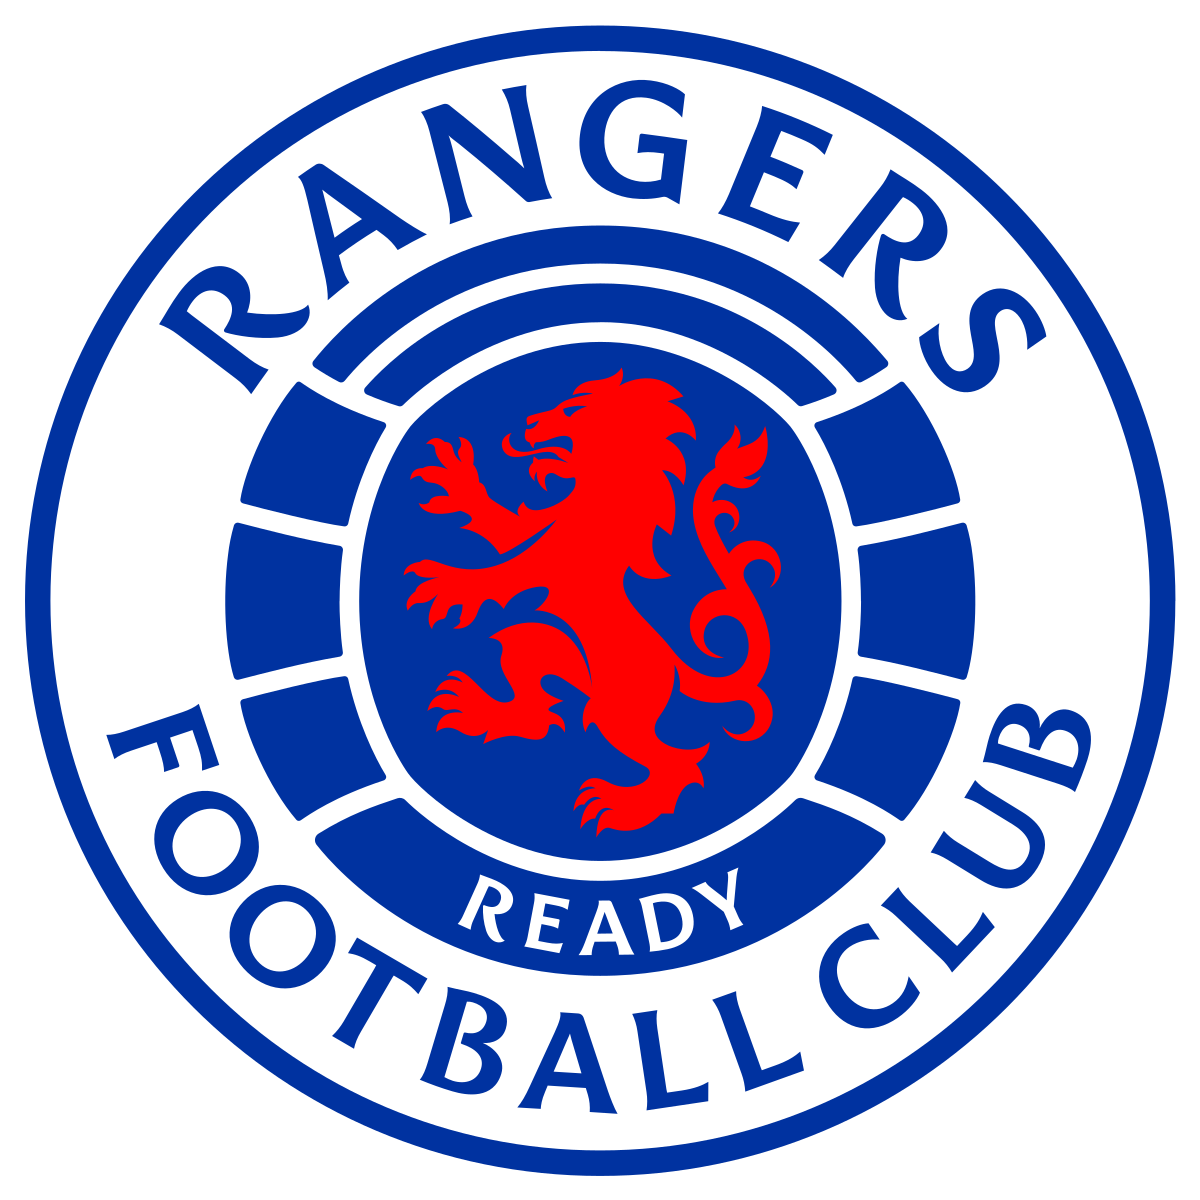 Rangers F C Wikipedia